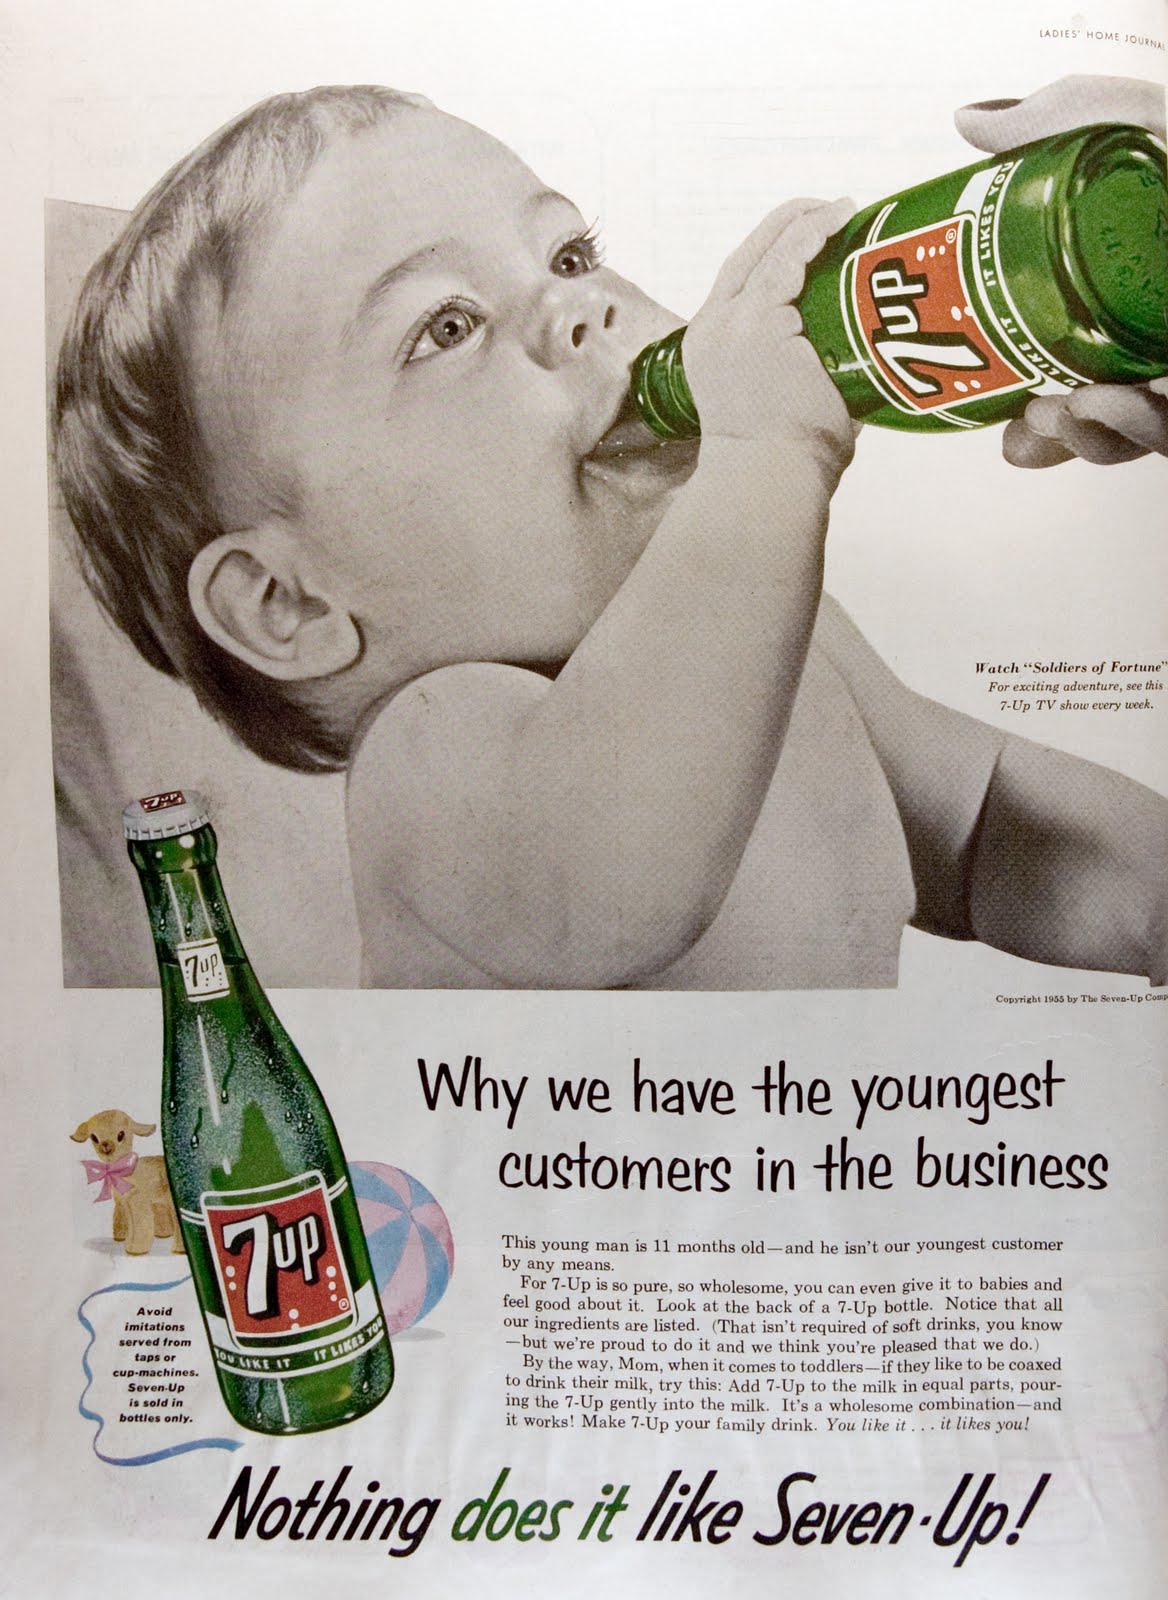 26 Shockingly Offensive Vintage Ads